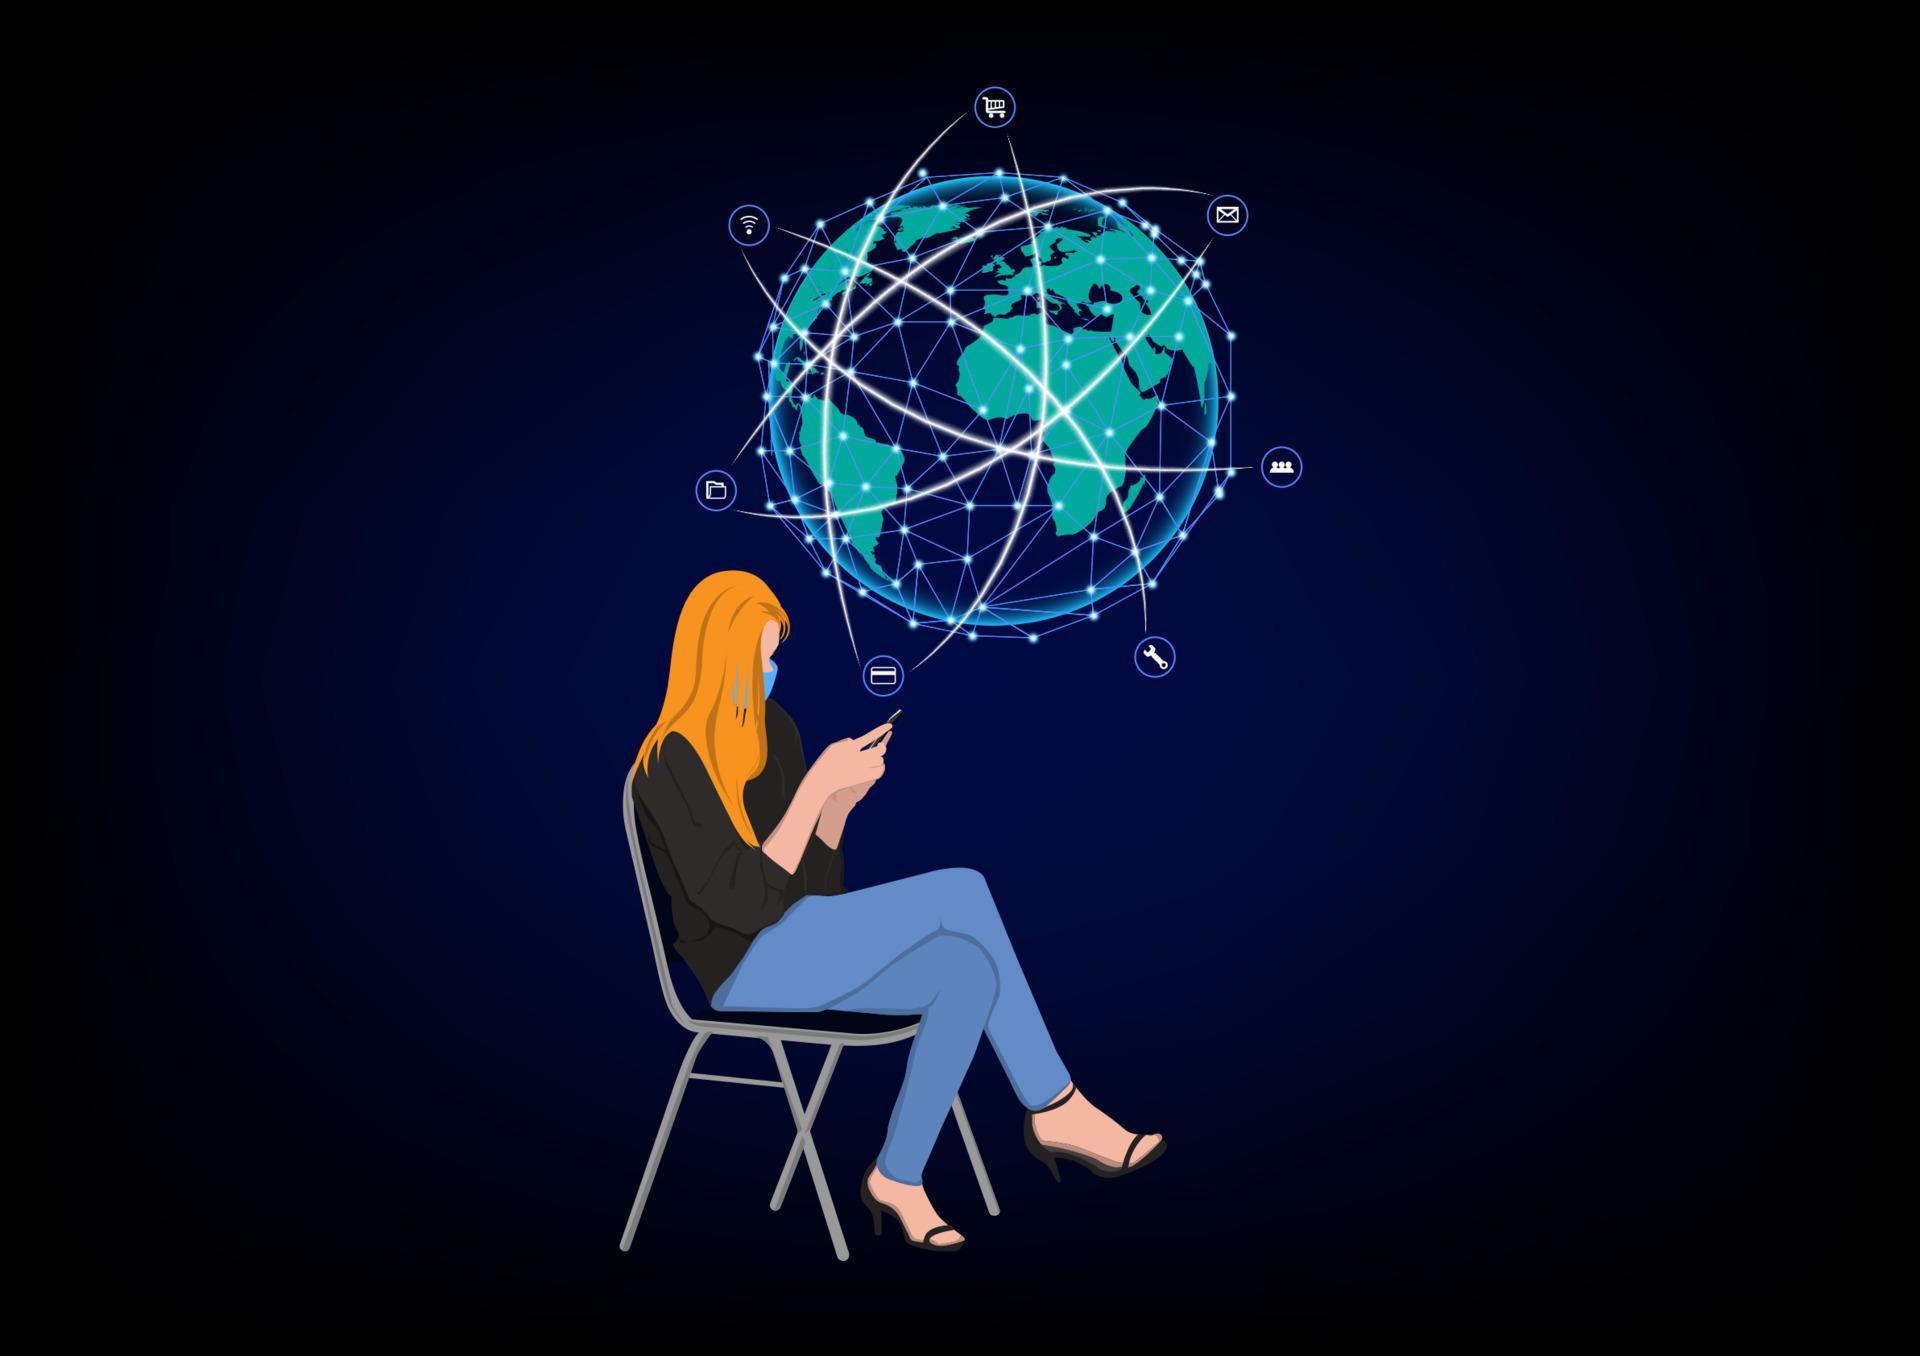 donna d'affari che si siede su una sedia e utilizza lo smartphone per la tecnologia di connessione, concetto che utilizza lo smartphone per la connessione alla connessione di rete globale vettore